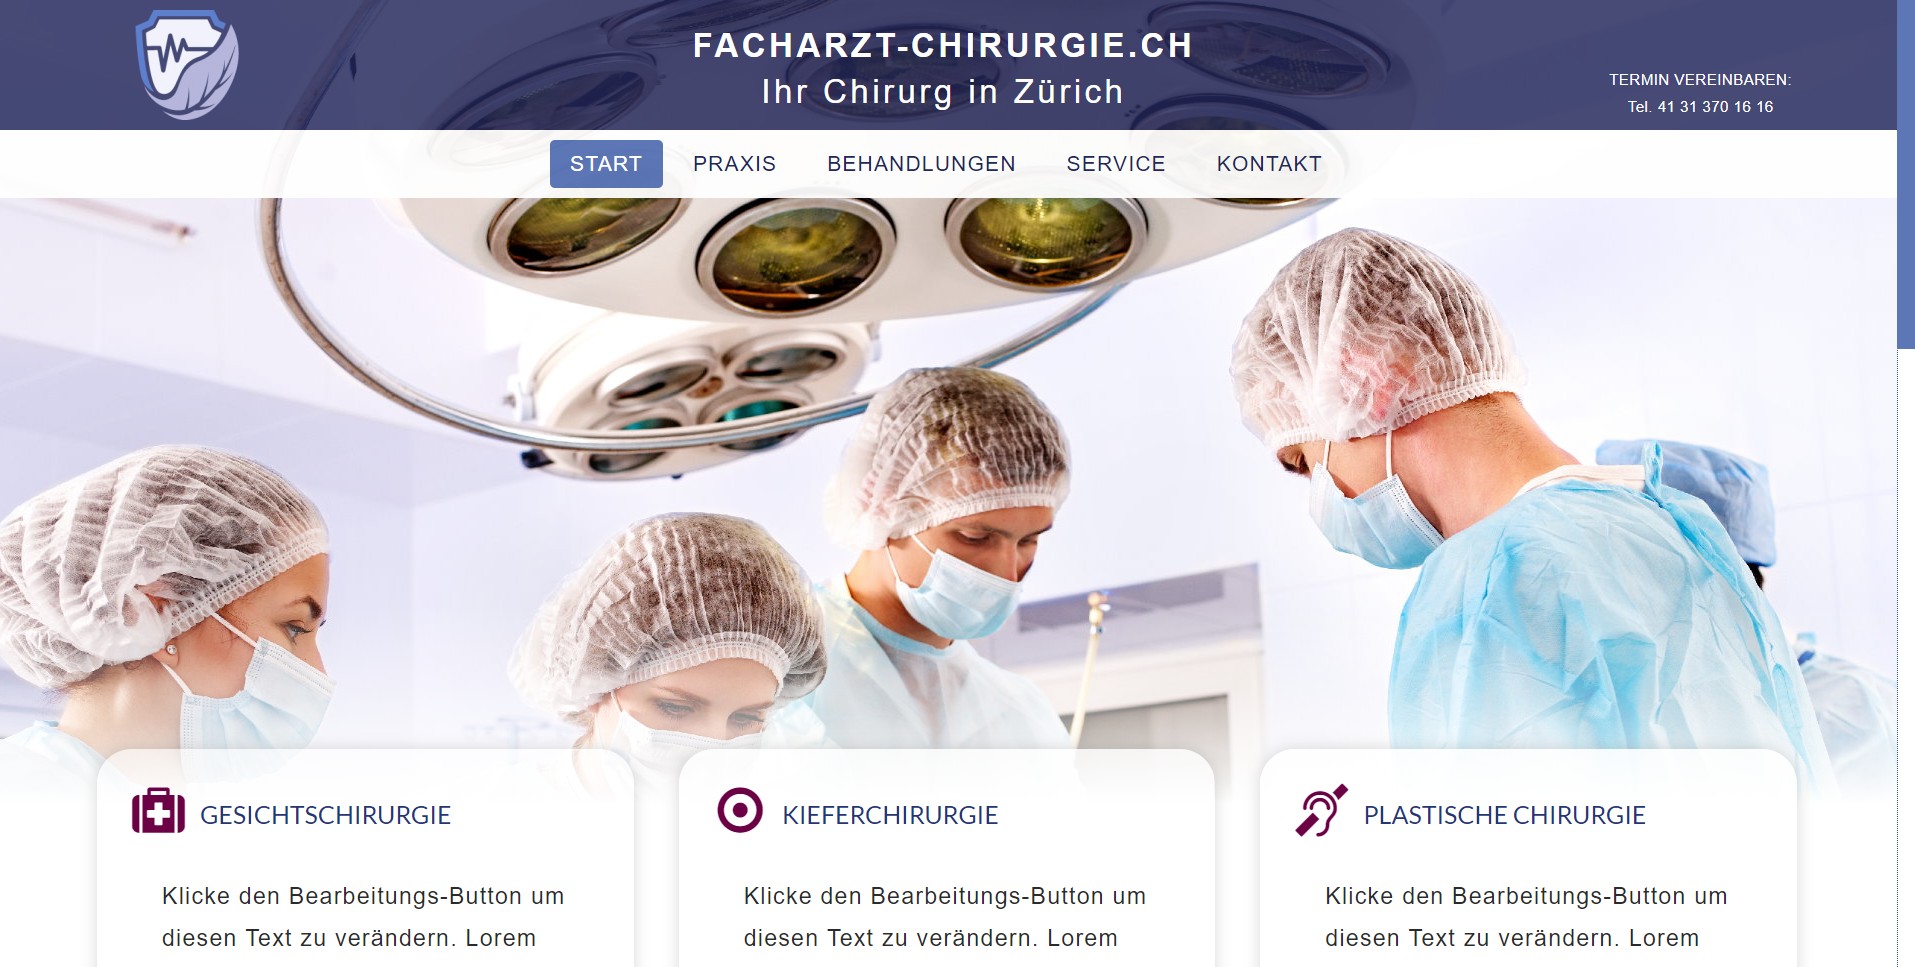 Facharzt-Chirurgie.ch